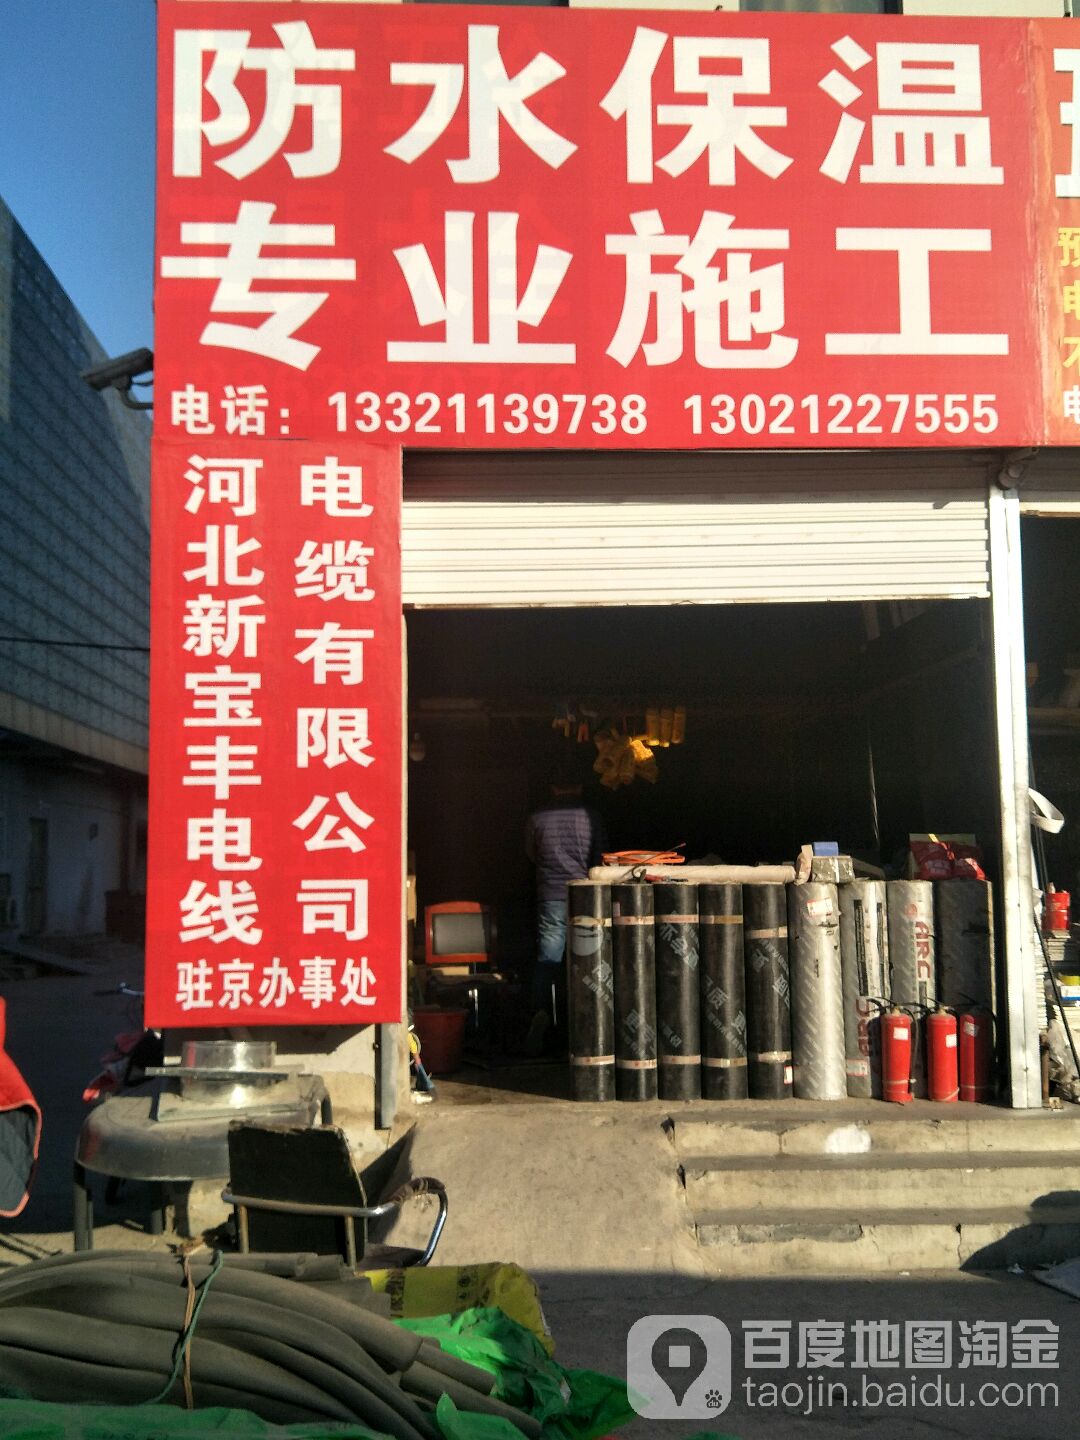 河北新宝丰电线电缆有限公司驻京办事处